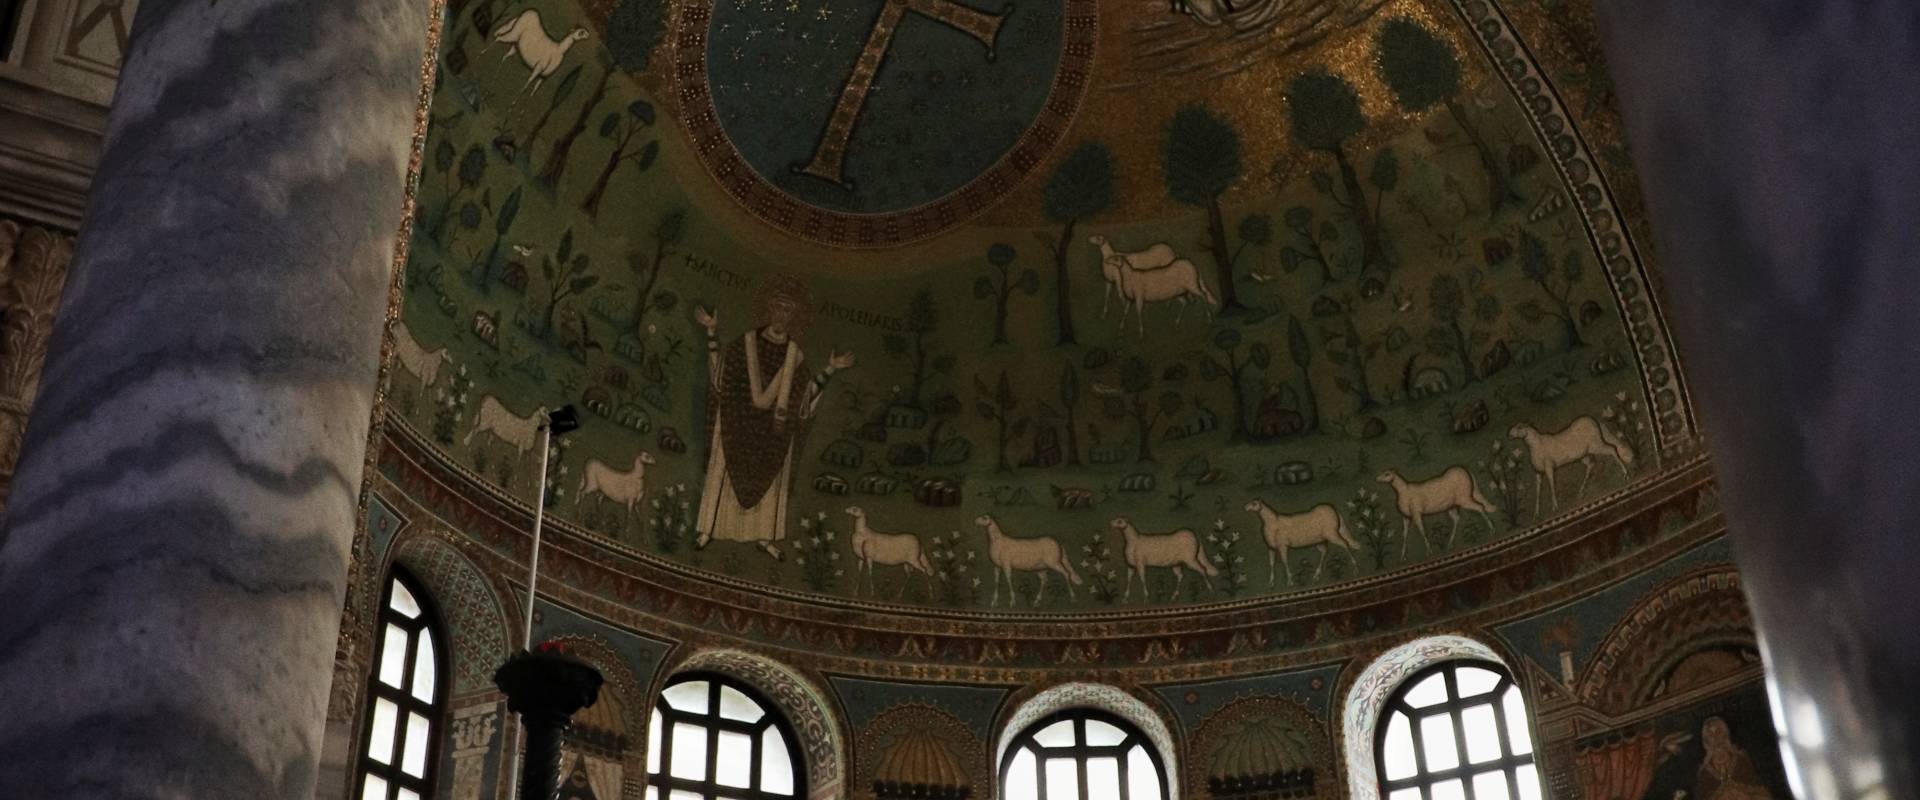 Basilica di Sant'Apollinare in Classe, Ravenna (interno, abside) photo by Stefano Casano